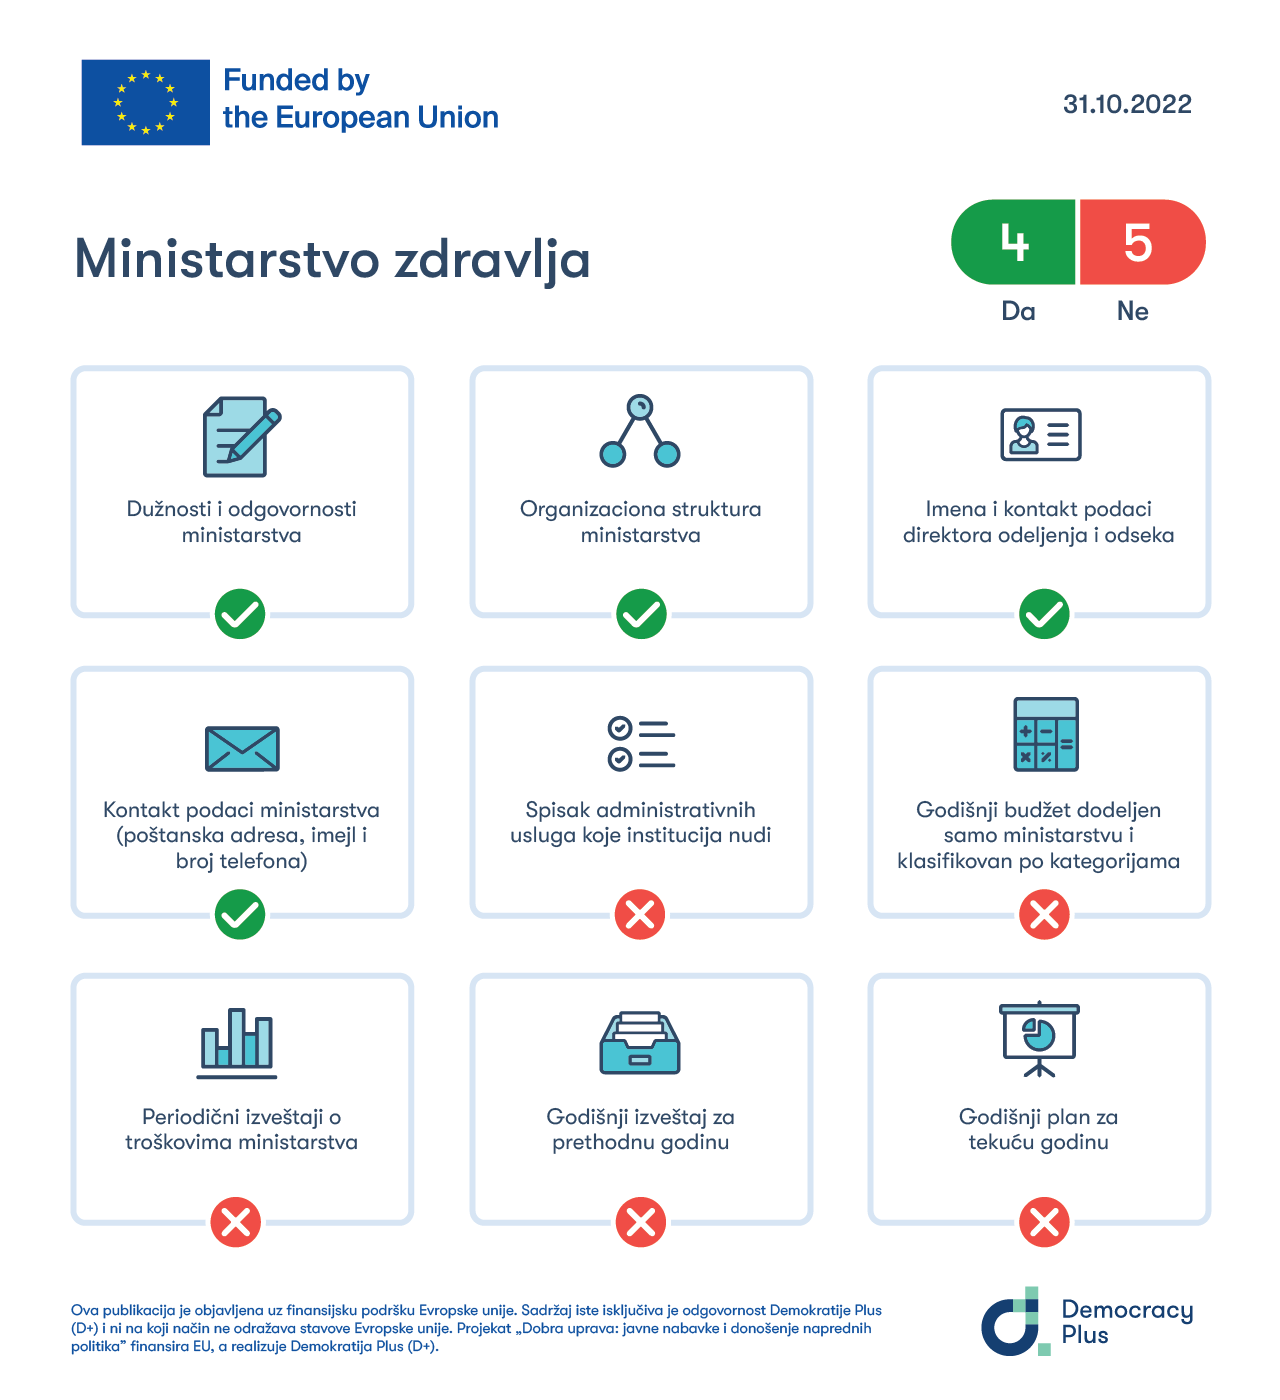 Transparentnost MZ-a ocenjena na osnovu ispunjenosti kriterijuma propisanih Administrativnim uputstvom o internet stranicama javnih institucija.